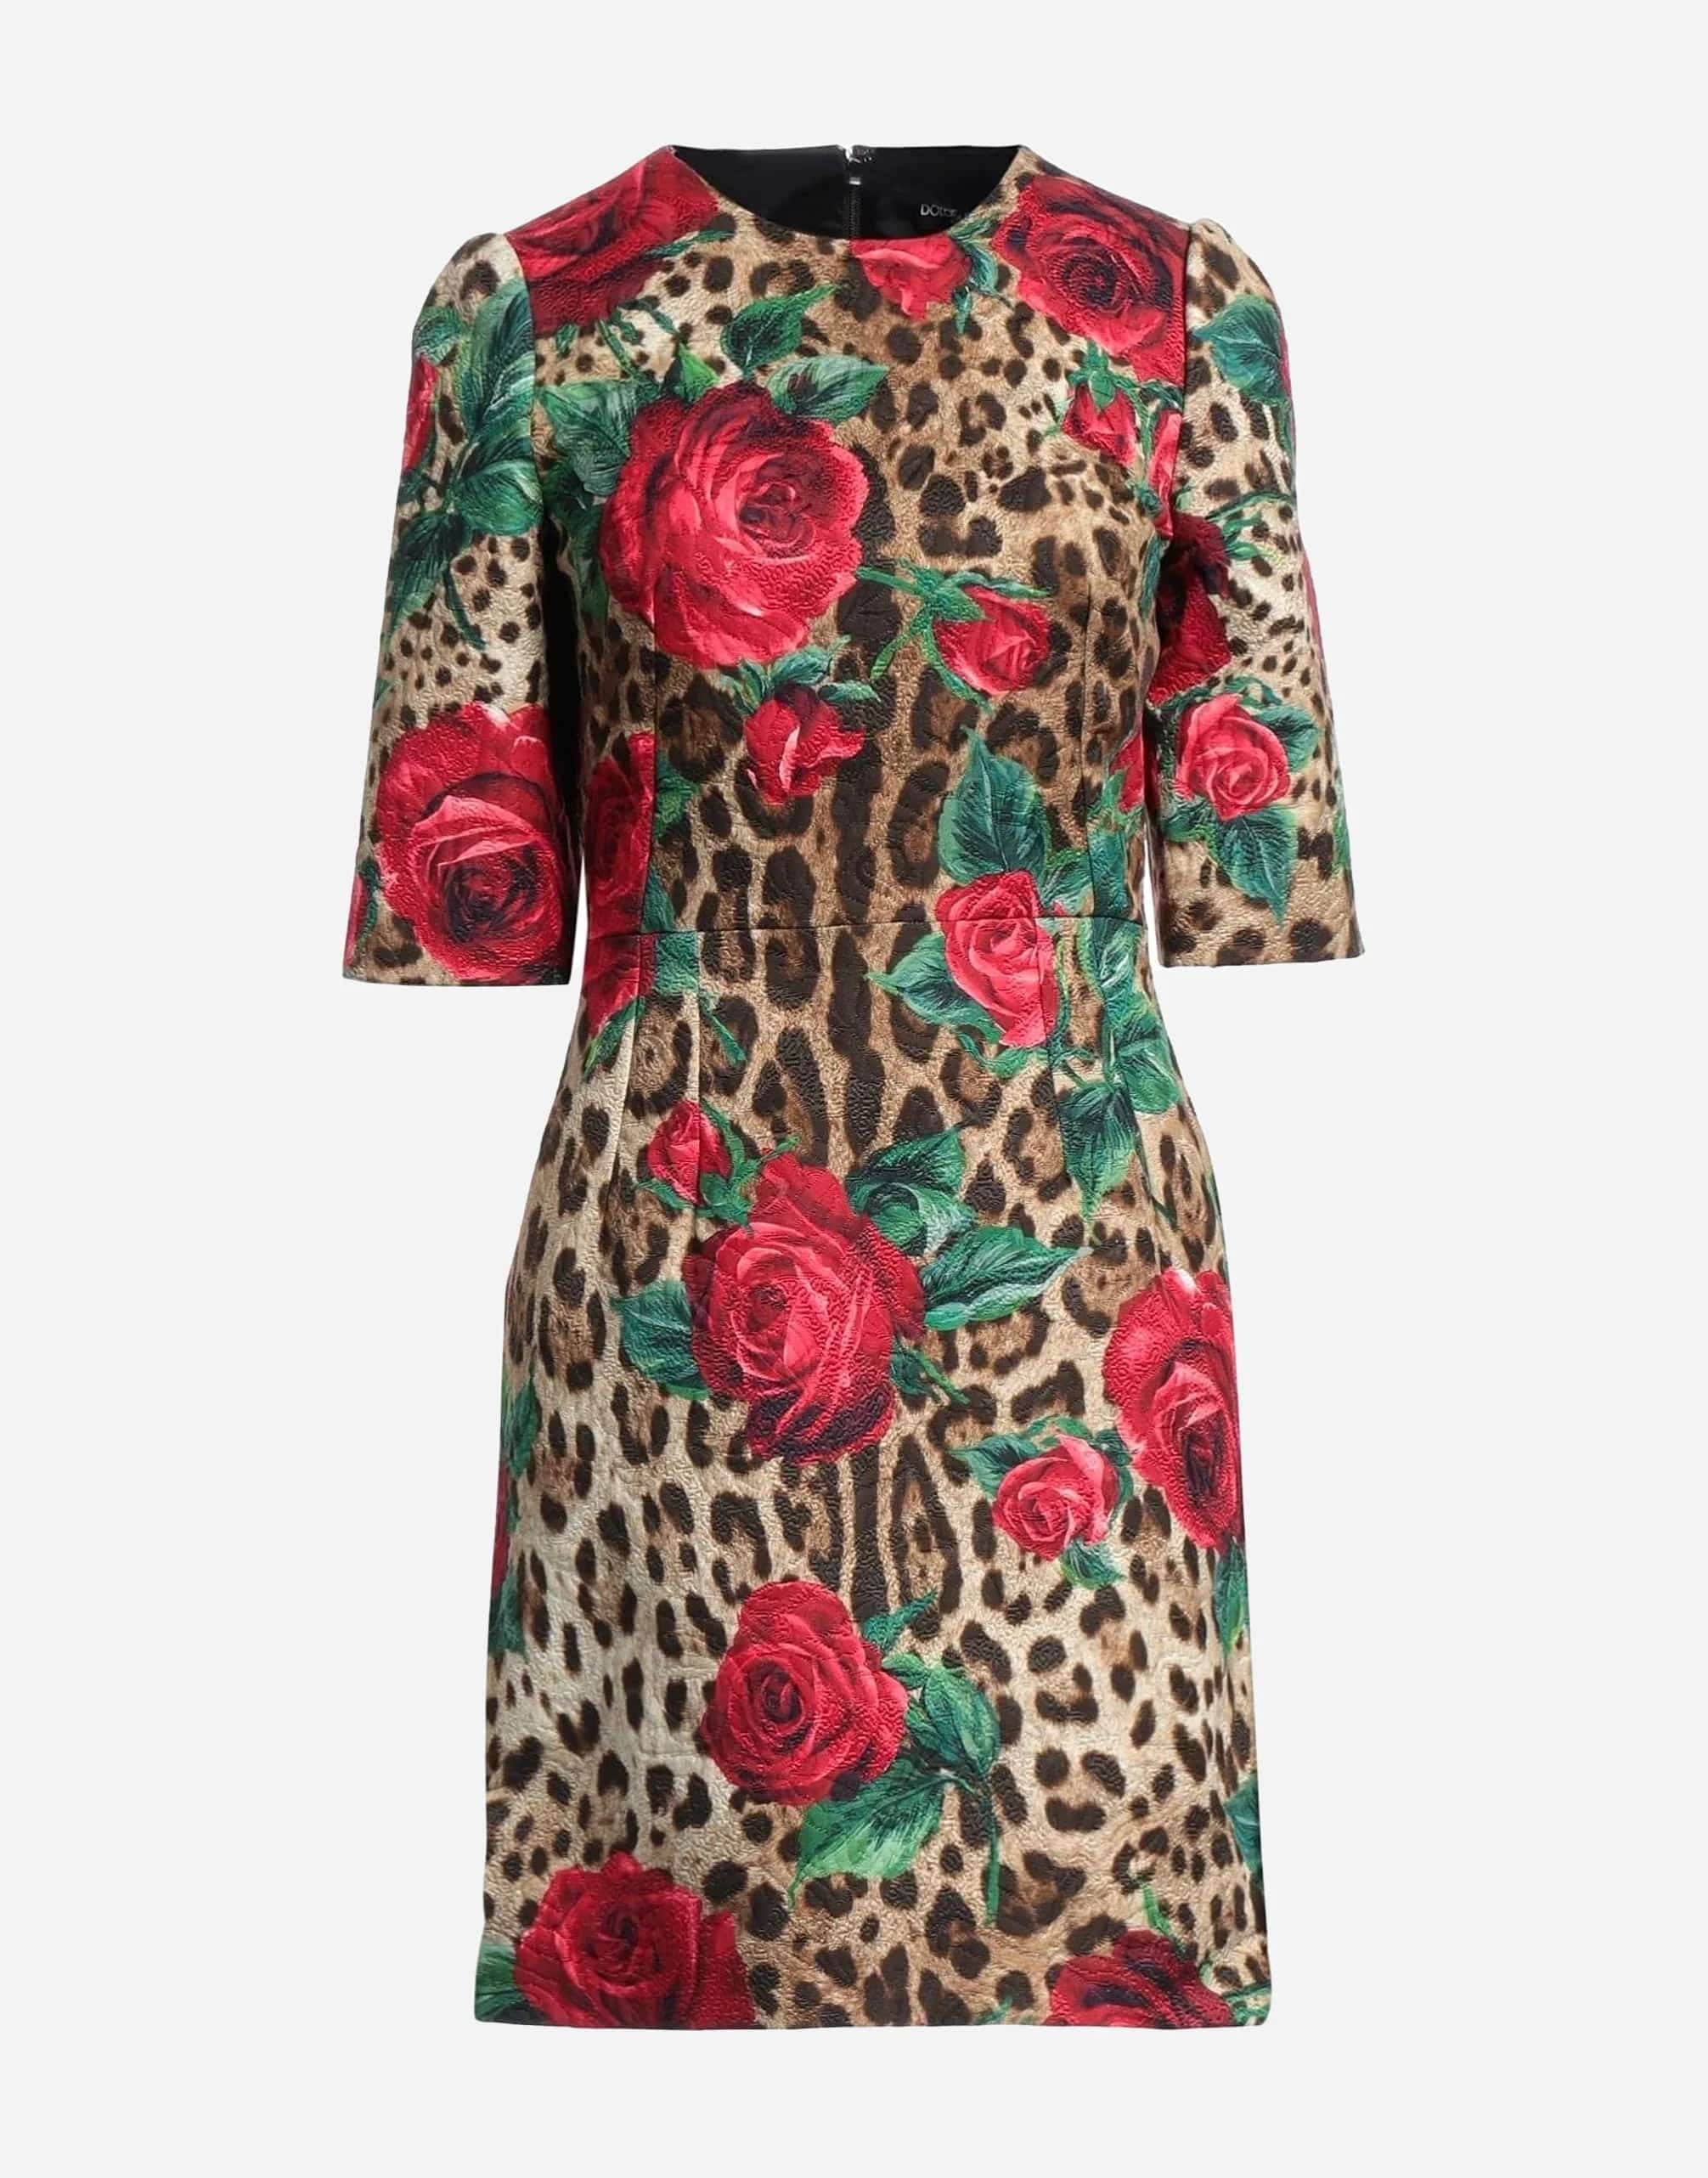 Dolce & Gabbana Leopard Print Mini Dress